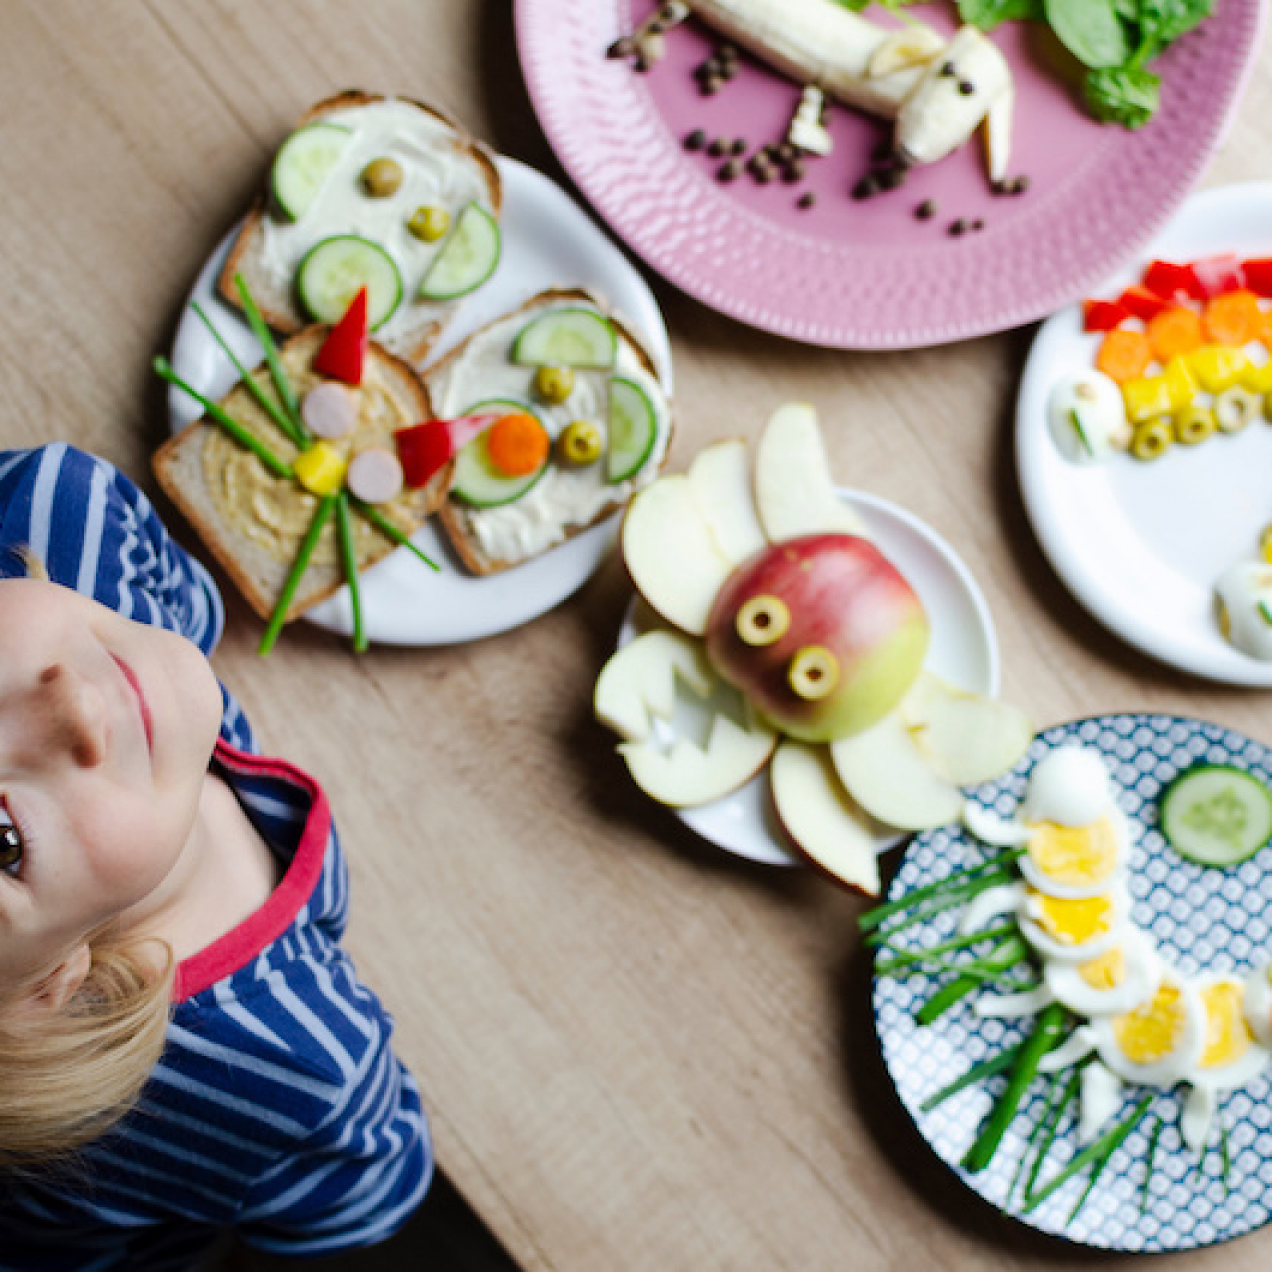 Des moyens créatifs pour intégrer les légumes dans l’alimentation de ton enfant